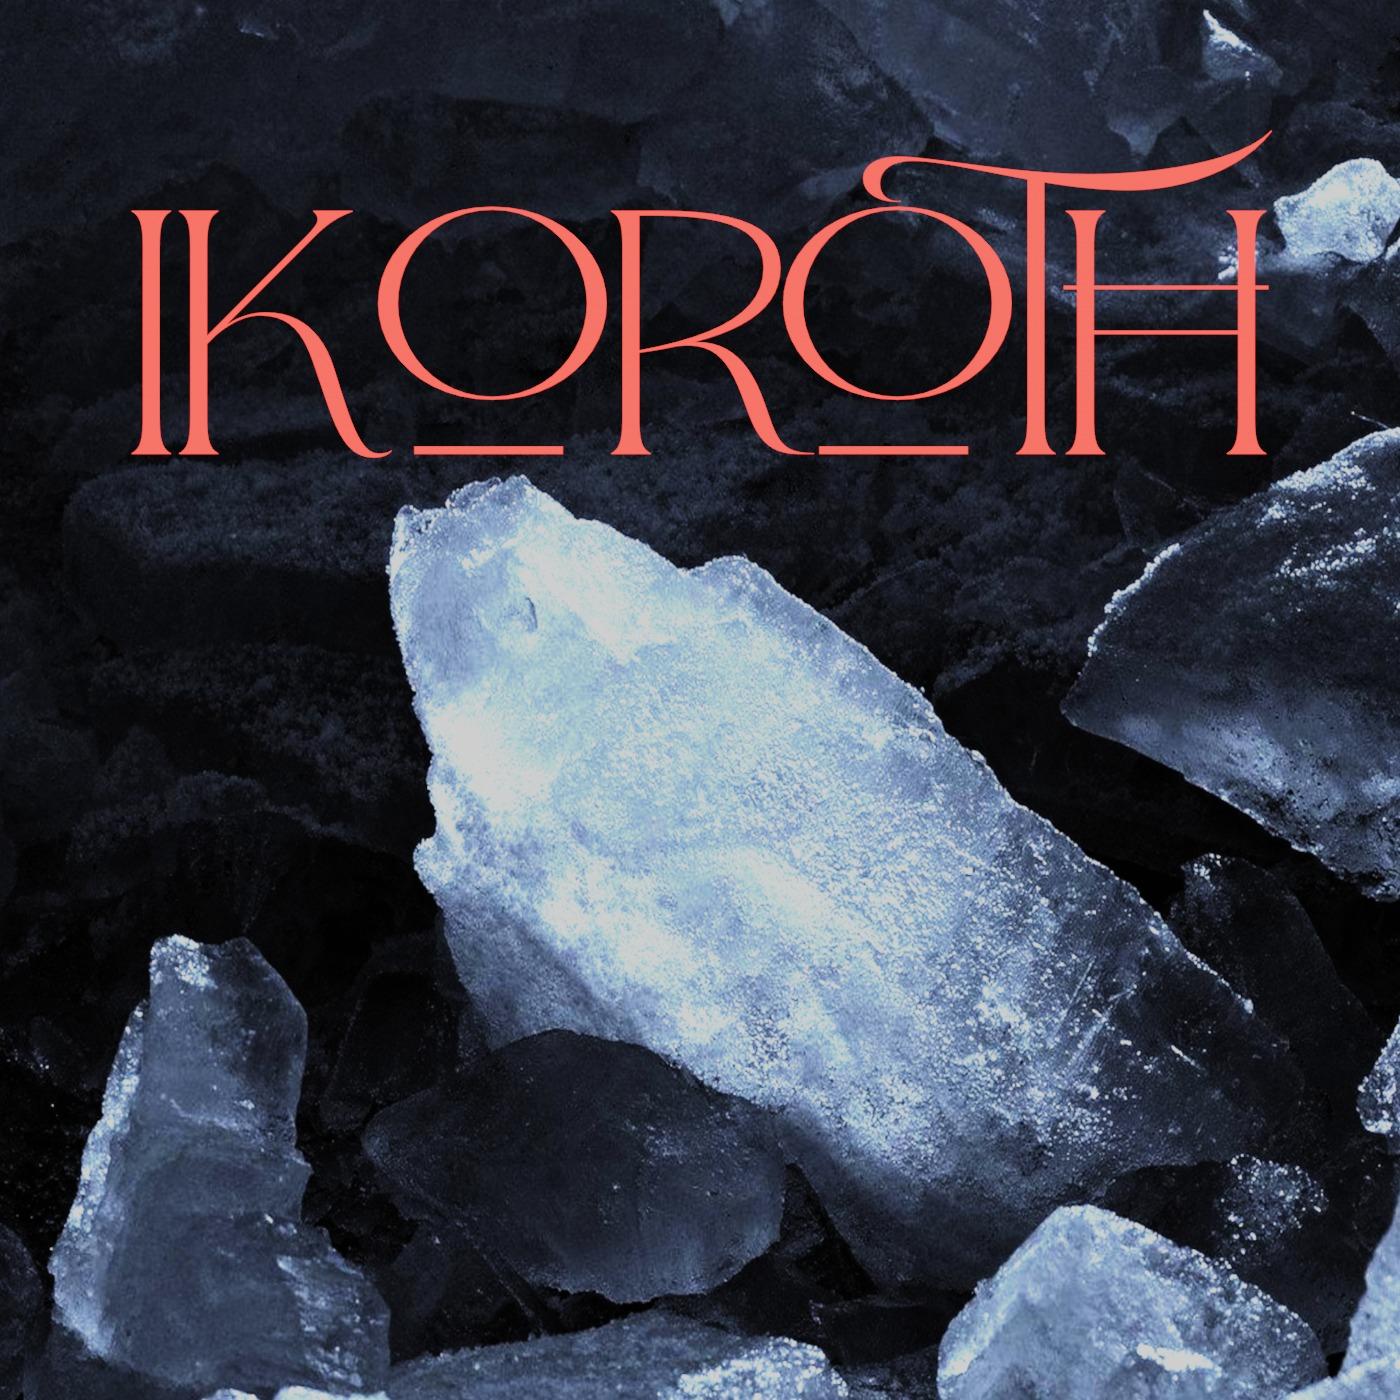 Ikoroth